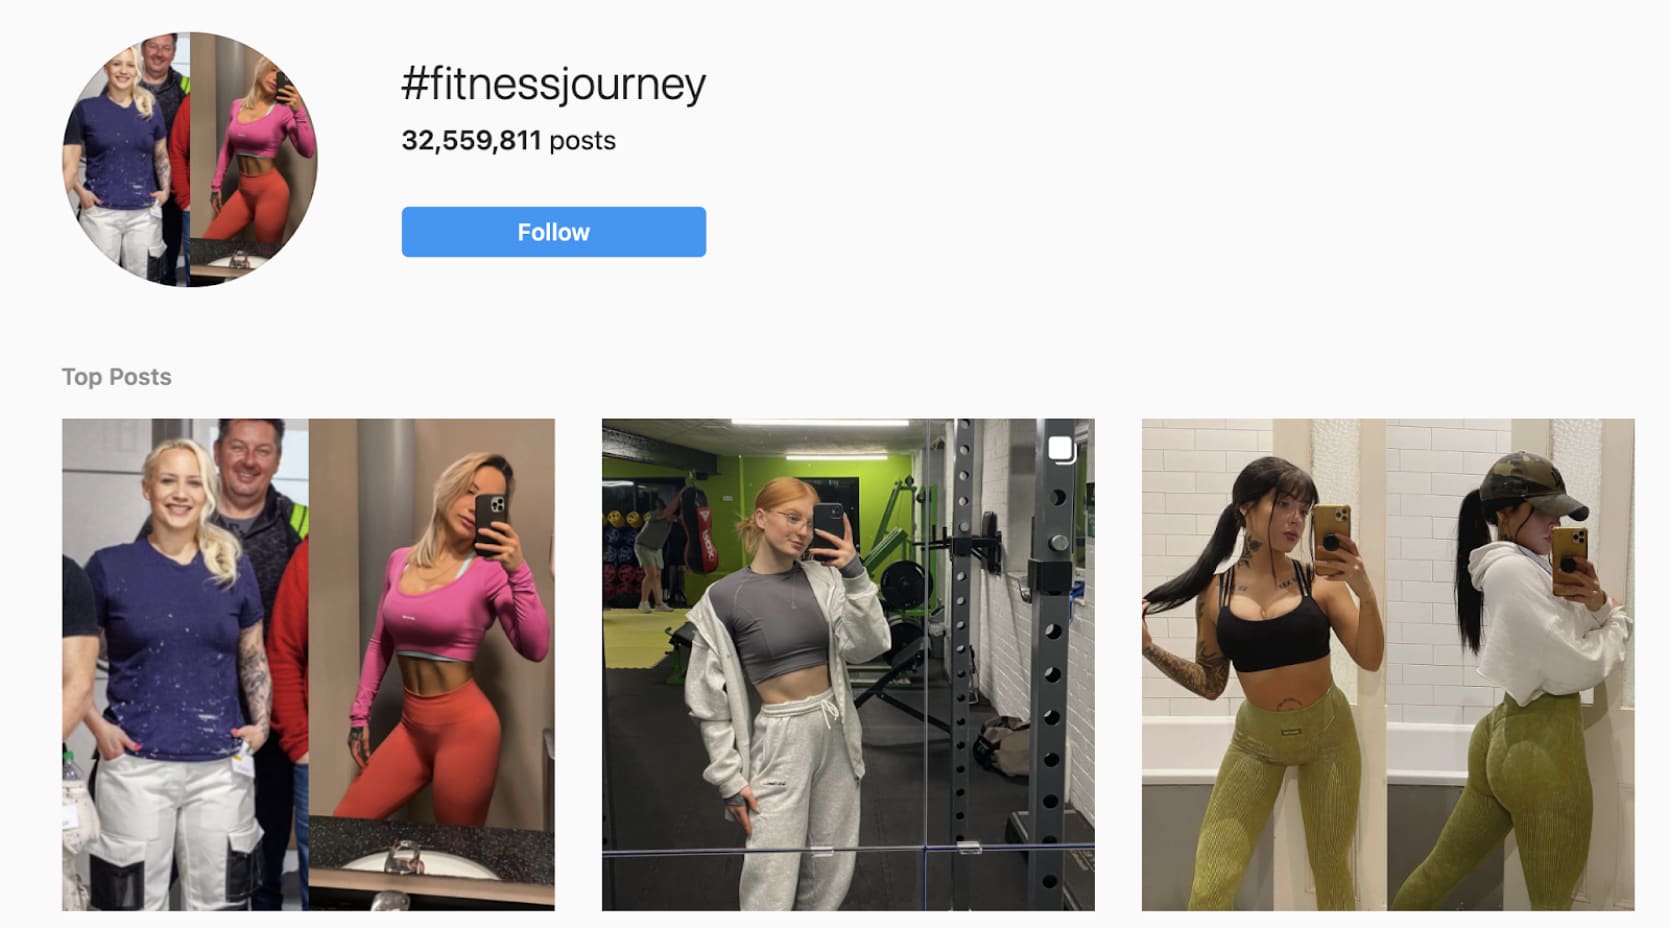 Instagram posts using the #fitnessjourney hashtag